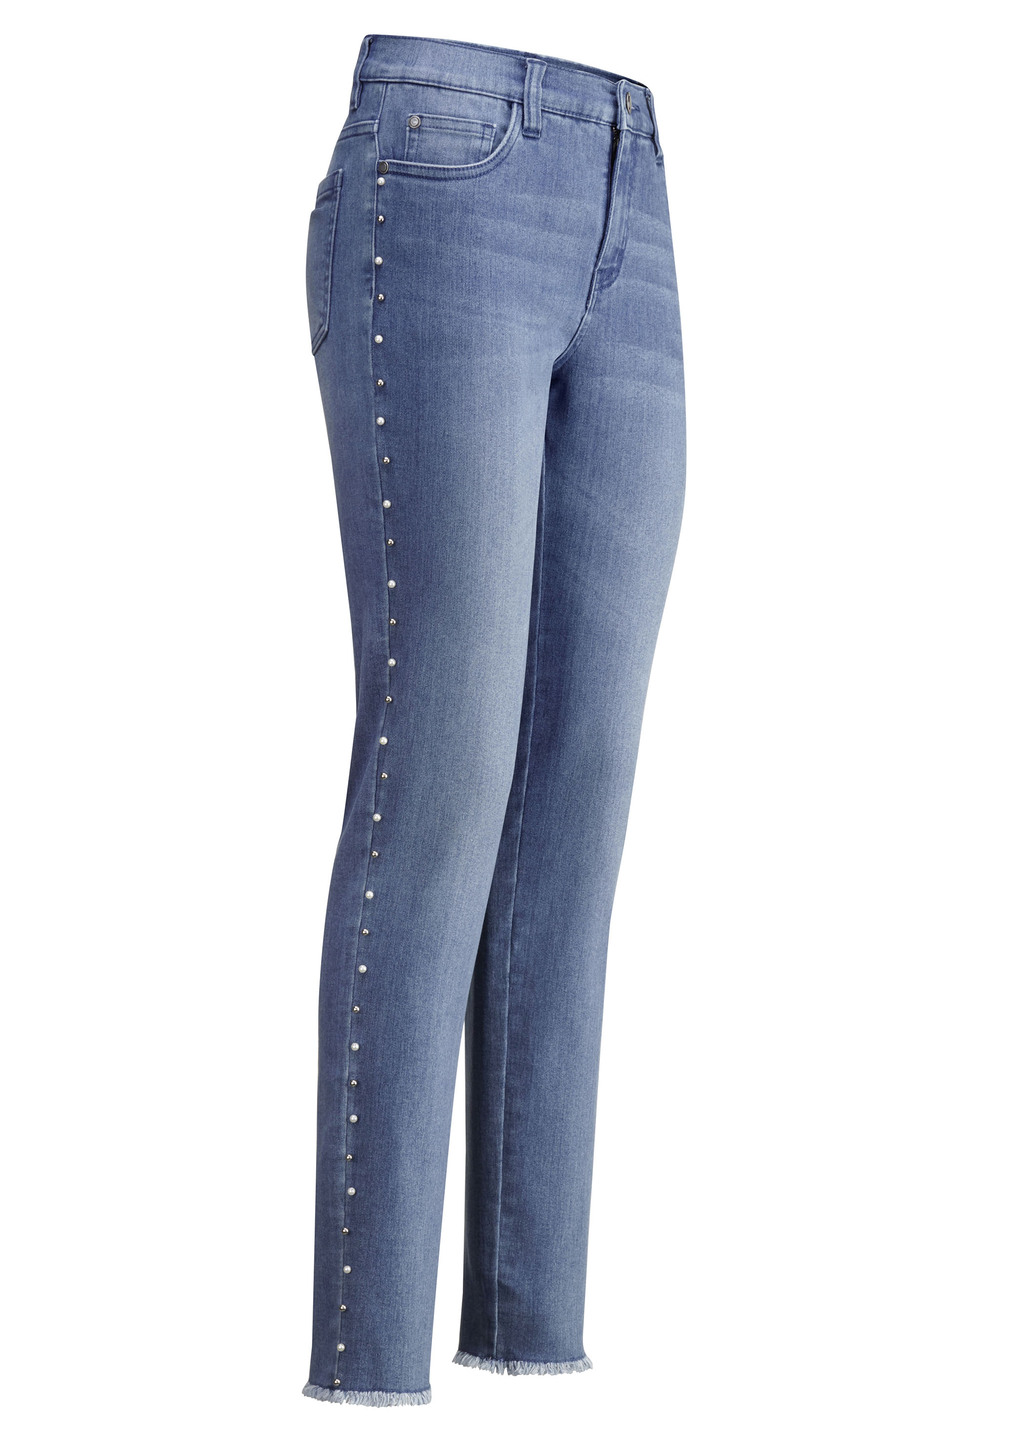 Edel-Jeans mit tollen Zierperlen, Jeansblau, Größe 44 von BADER